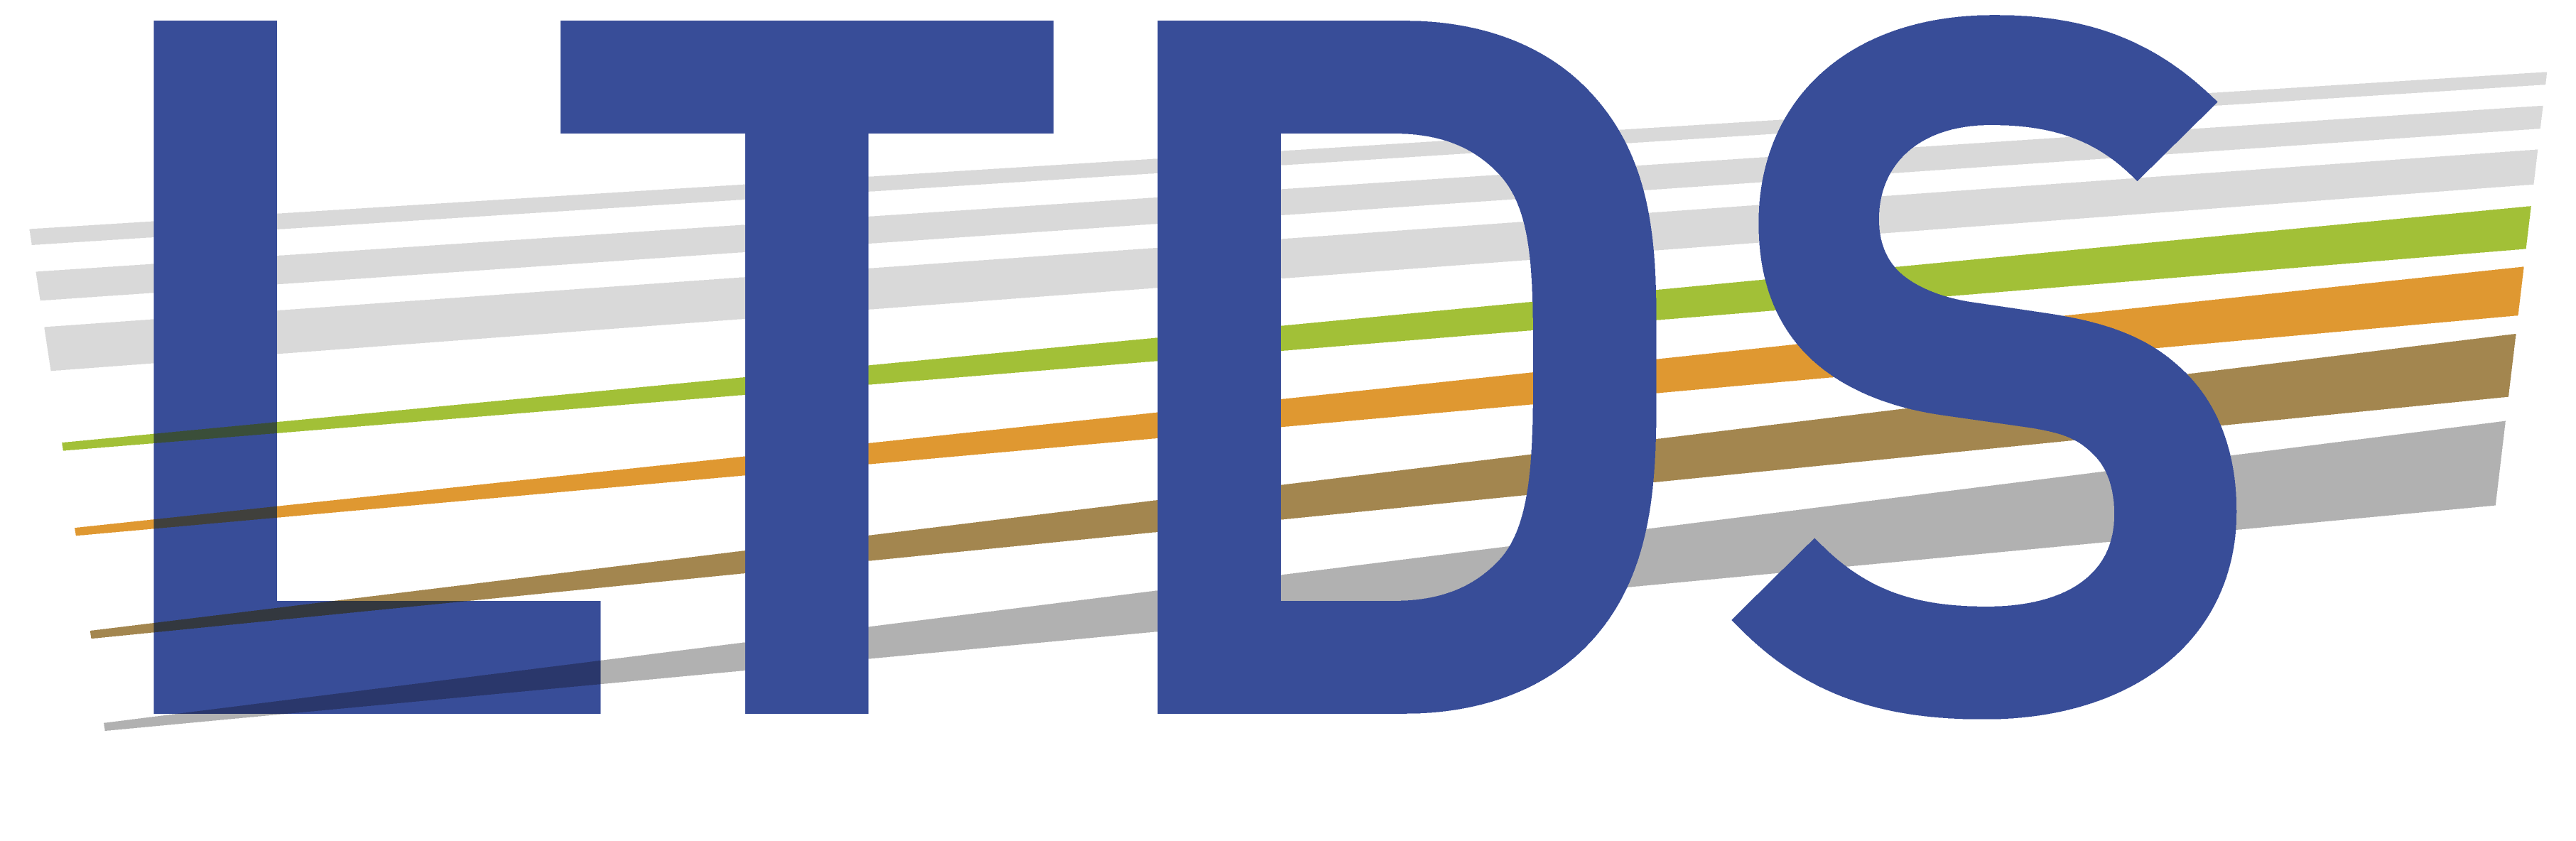 LTDS - Laboratoire de Tribologie et Dynamique des Systèmes